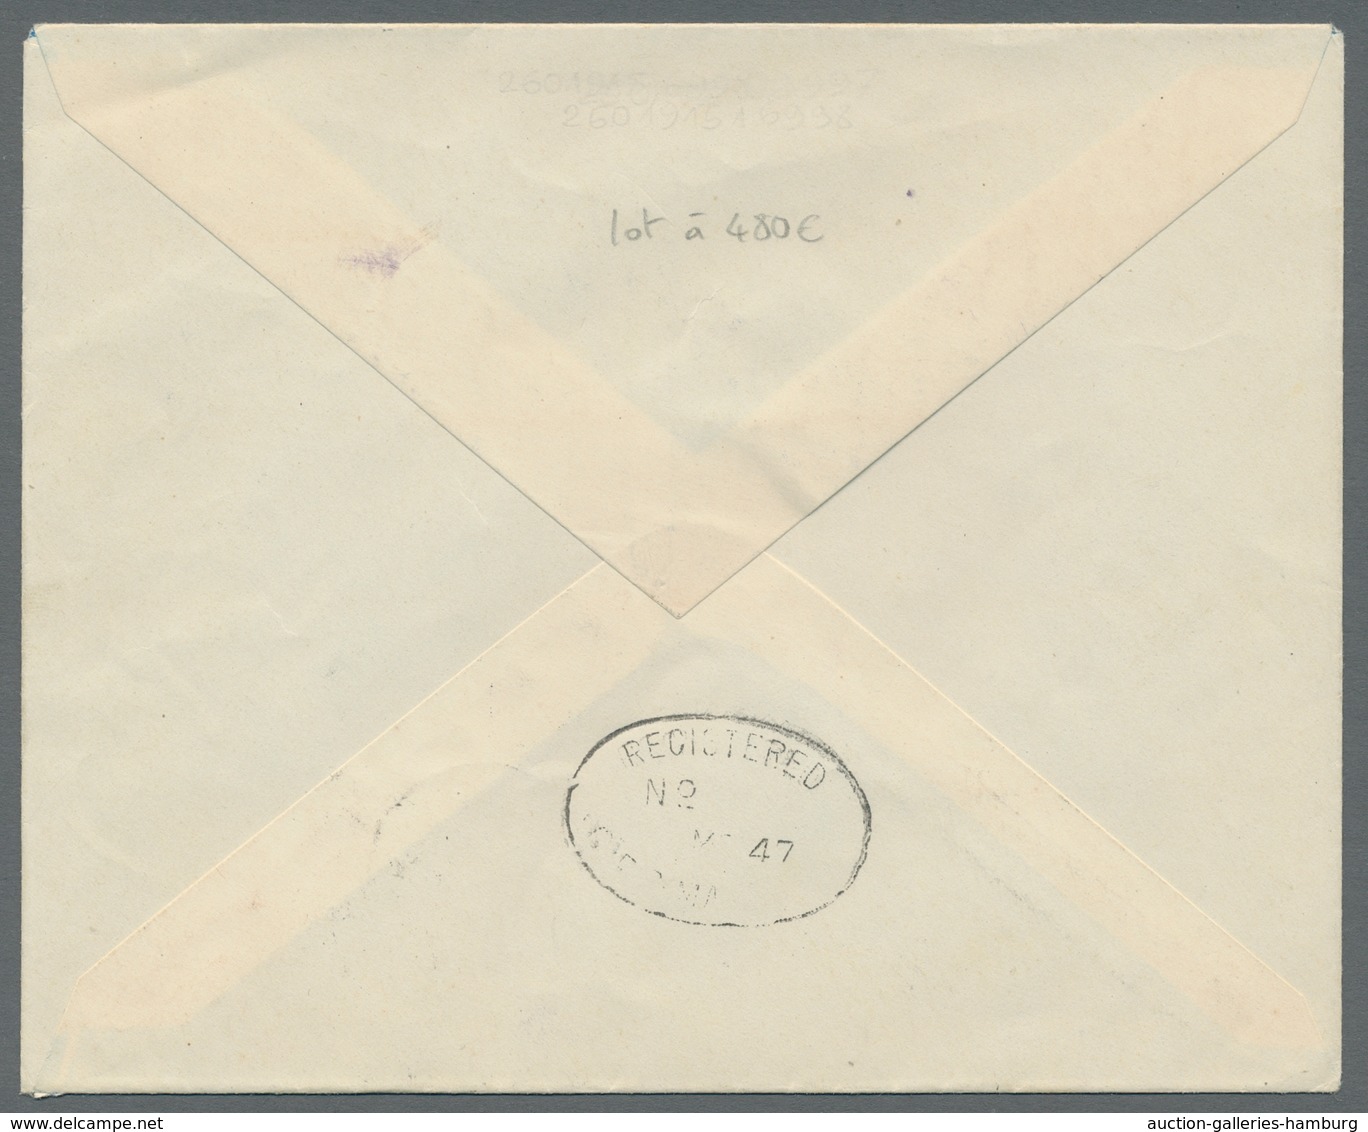 Reunion: 1917-75, reichhaltige Sammlung von 100 Briefen und Karten im Briefealbum, überwiegend Luftp